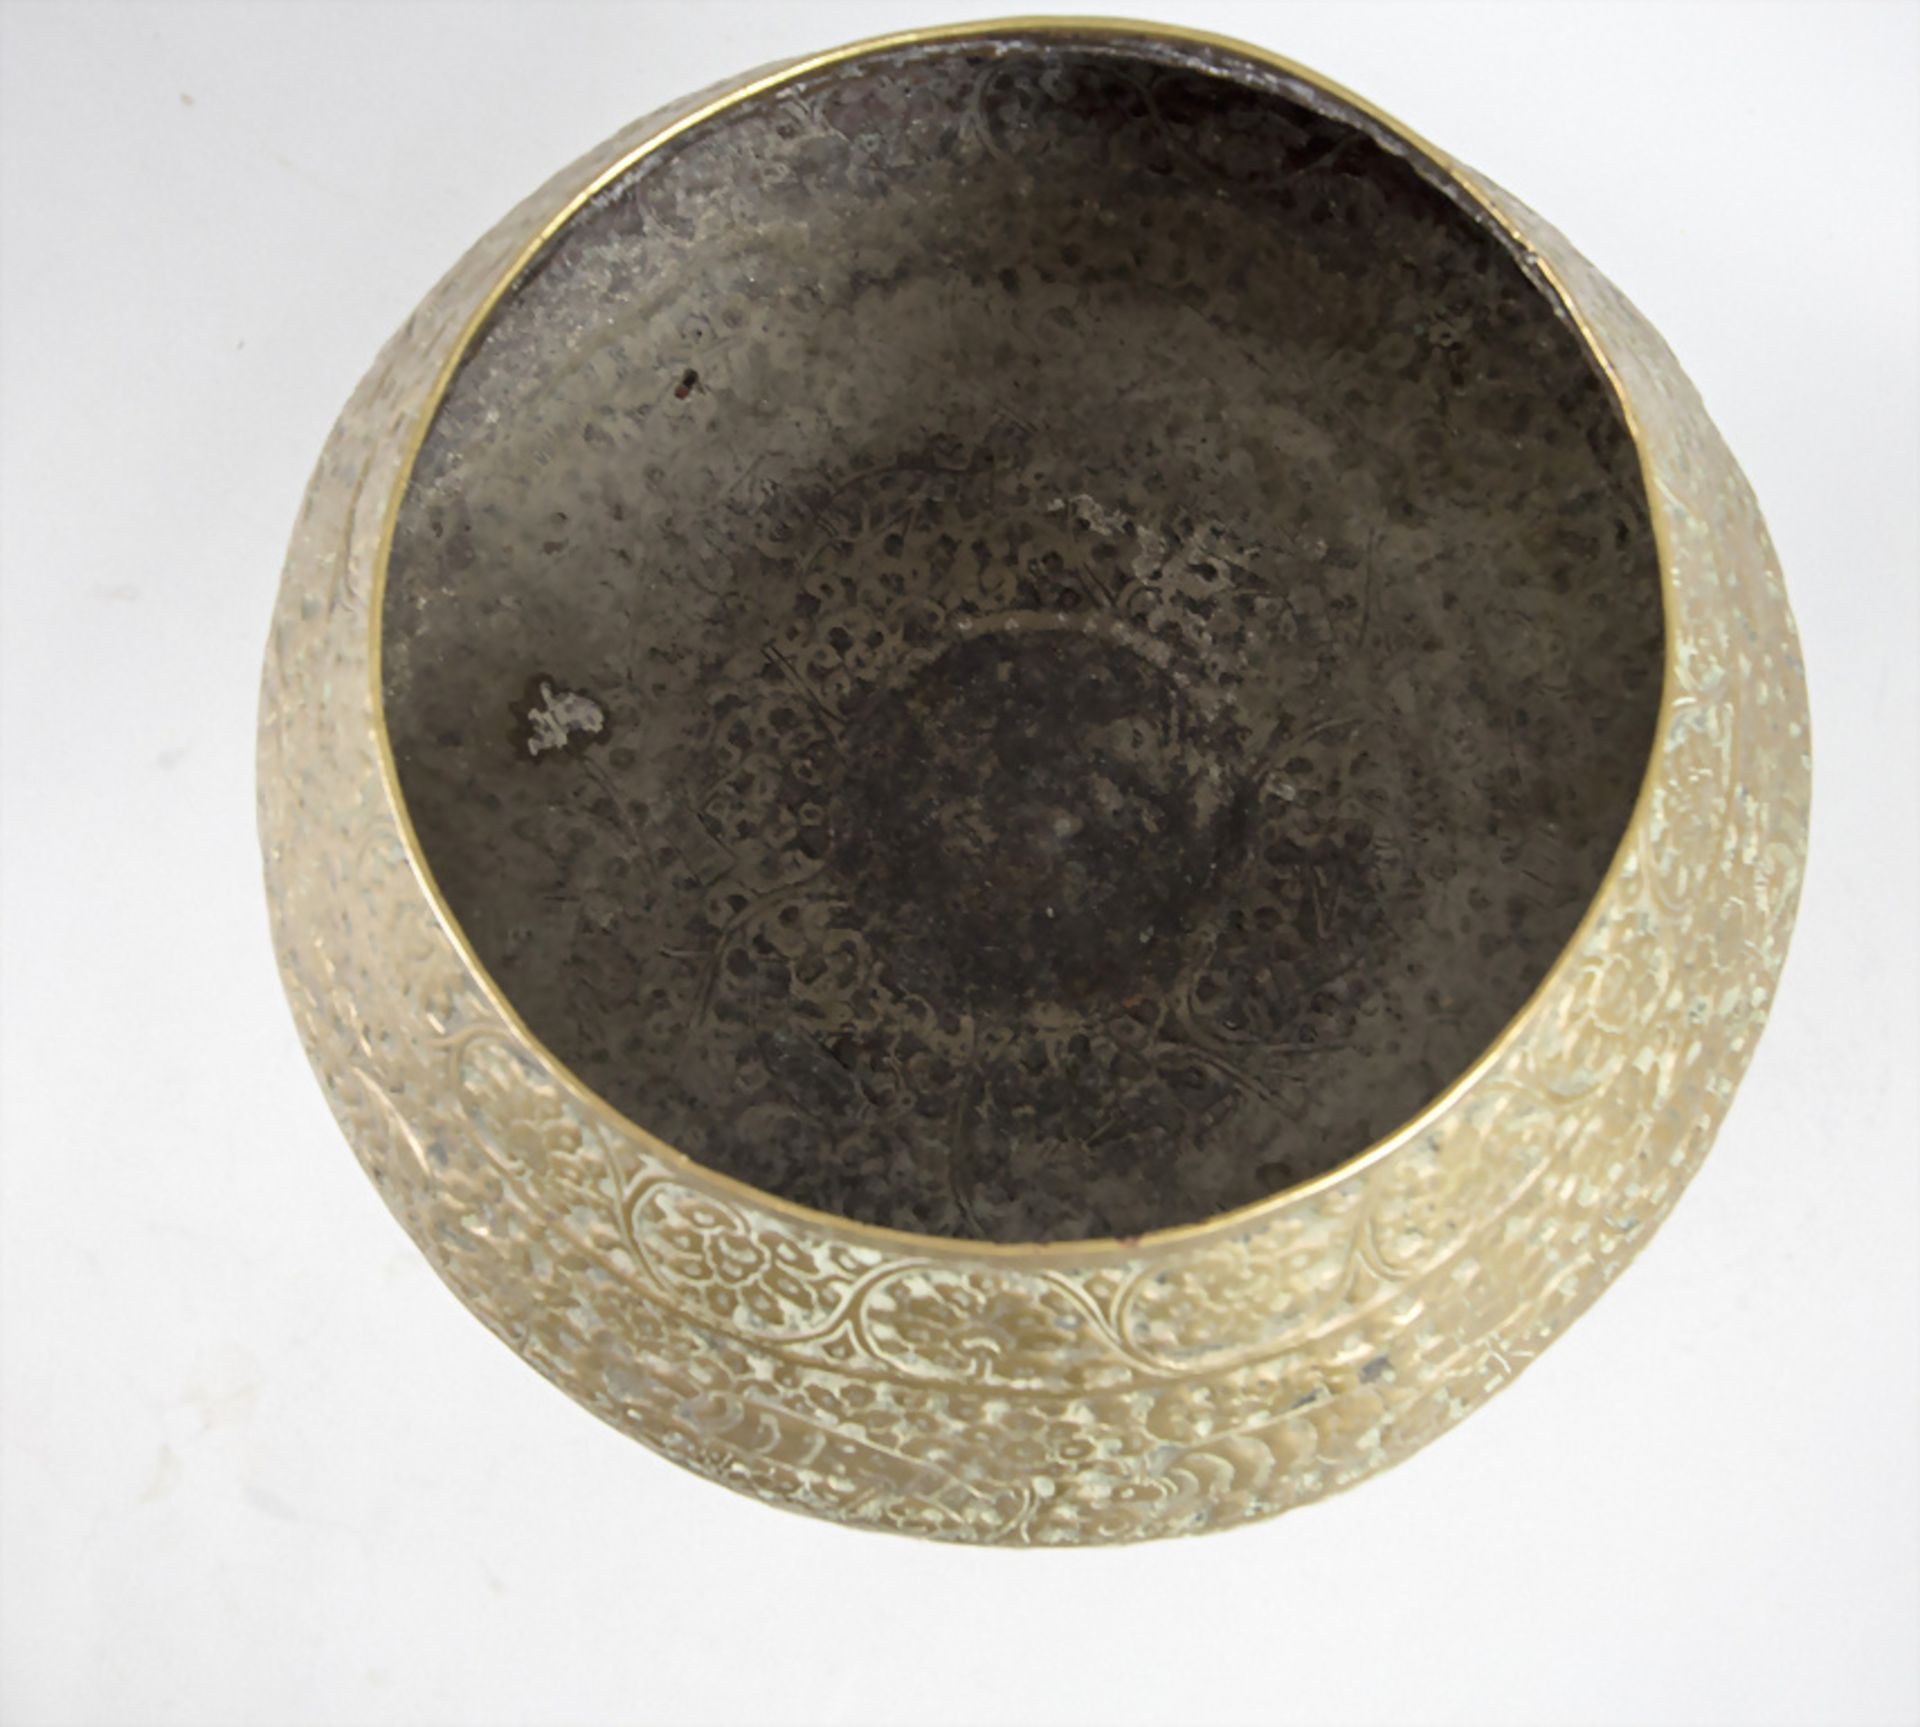 Orientalische Fußschale / An Oriental footed bowl, wohl Persien, um 1920 - Bild 5 aus 6